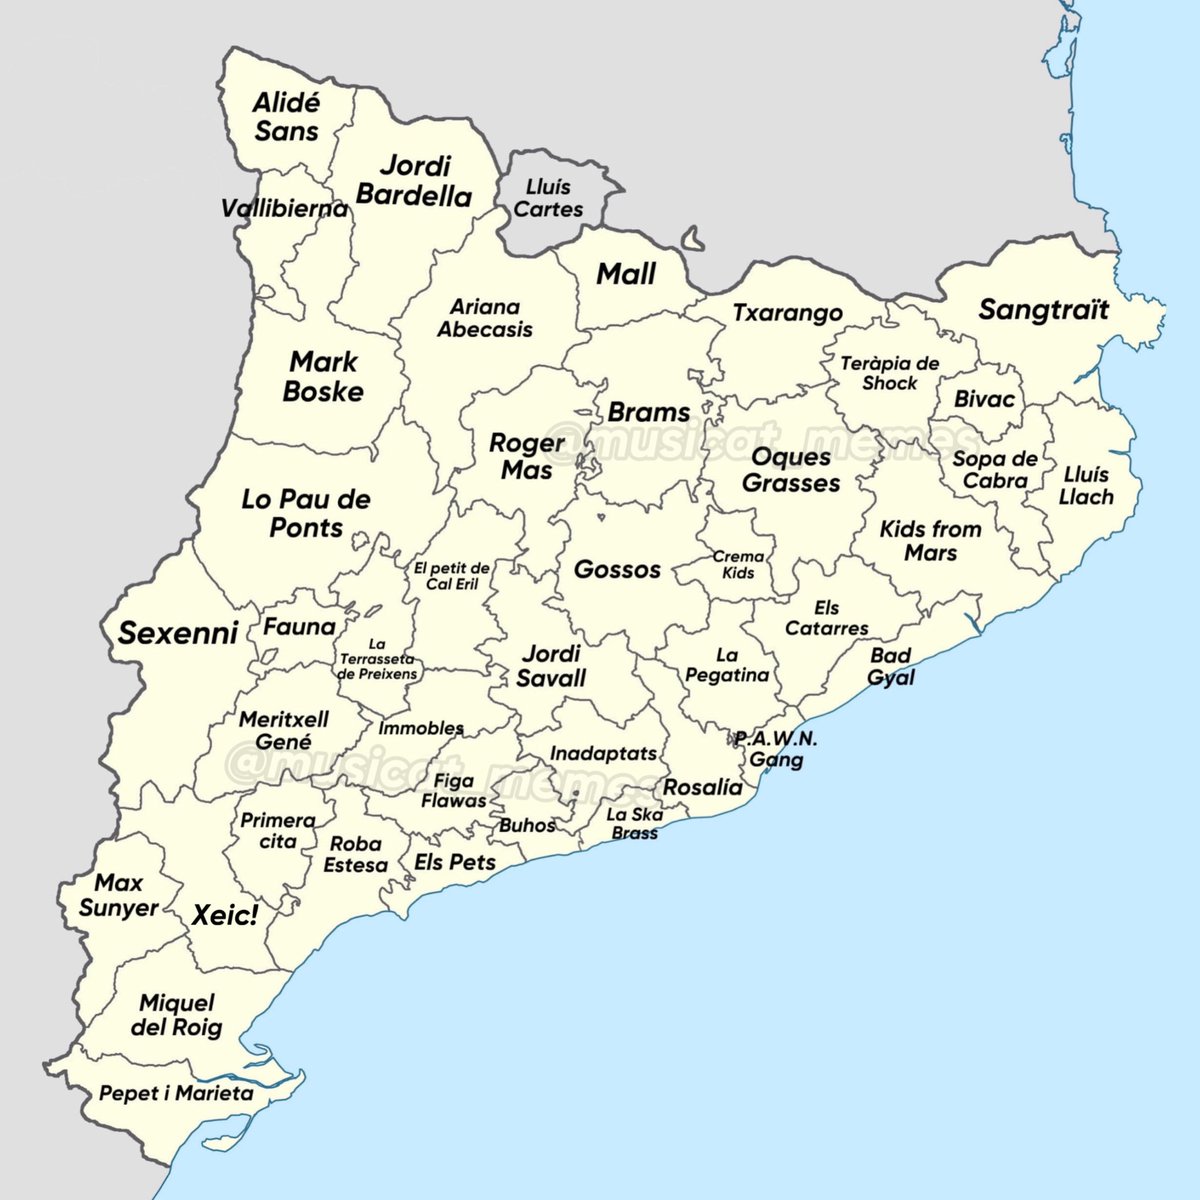 Aquests són els grups/artistes més famosos de cada comarca de Catalunya